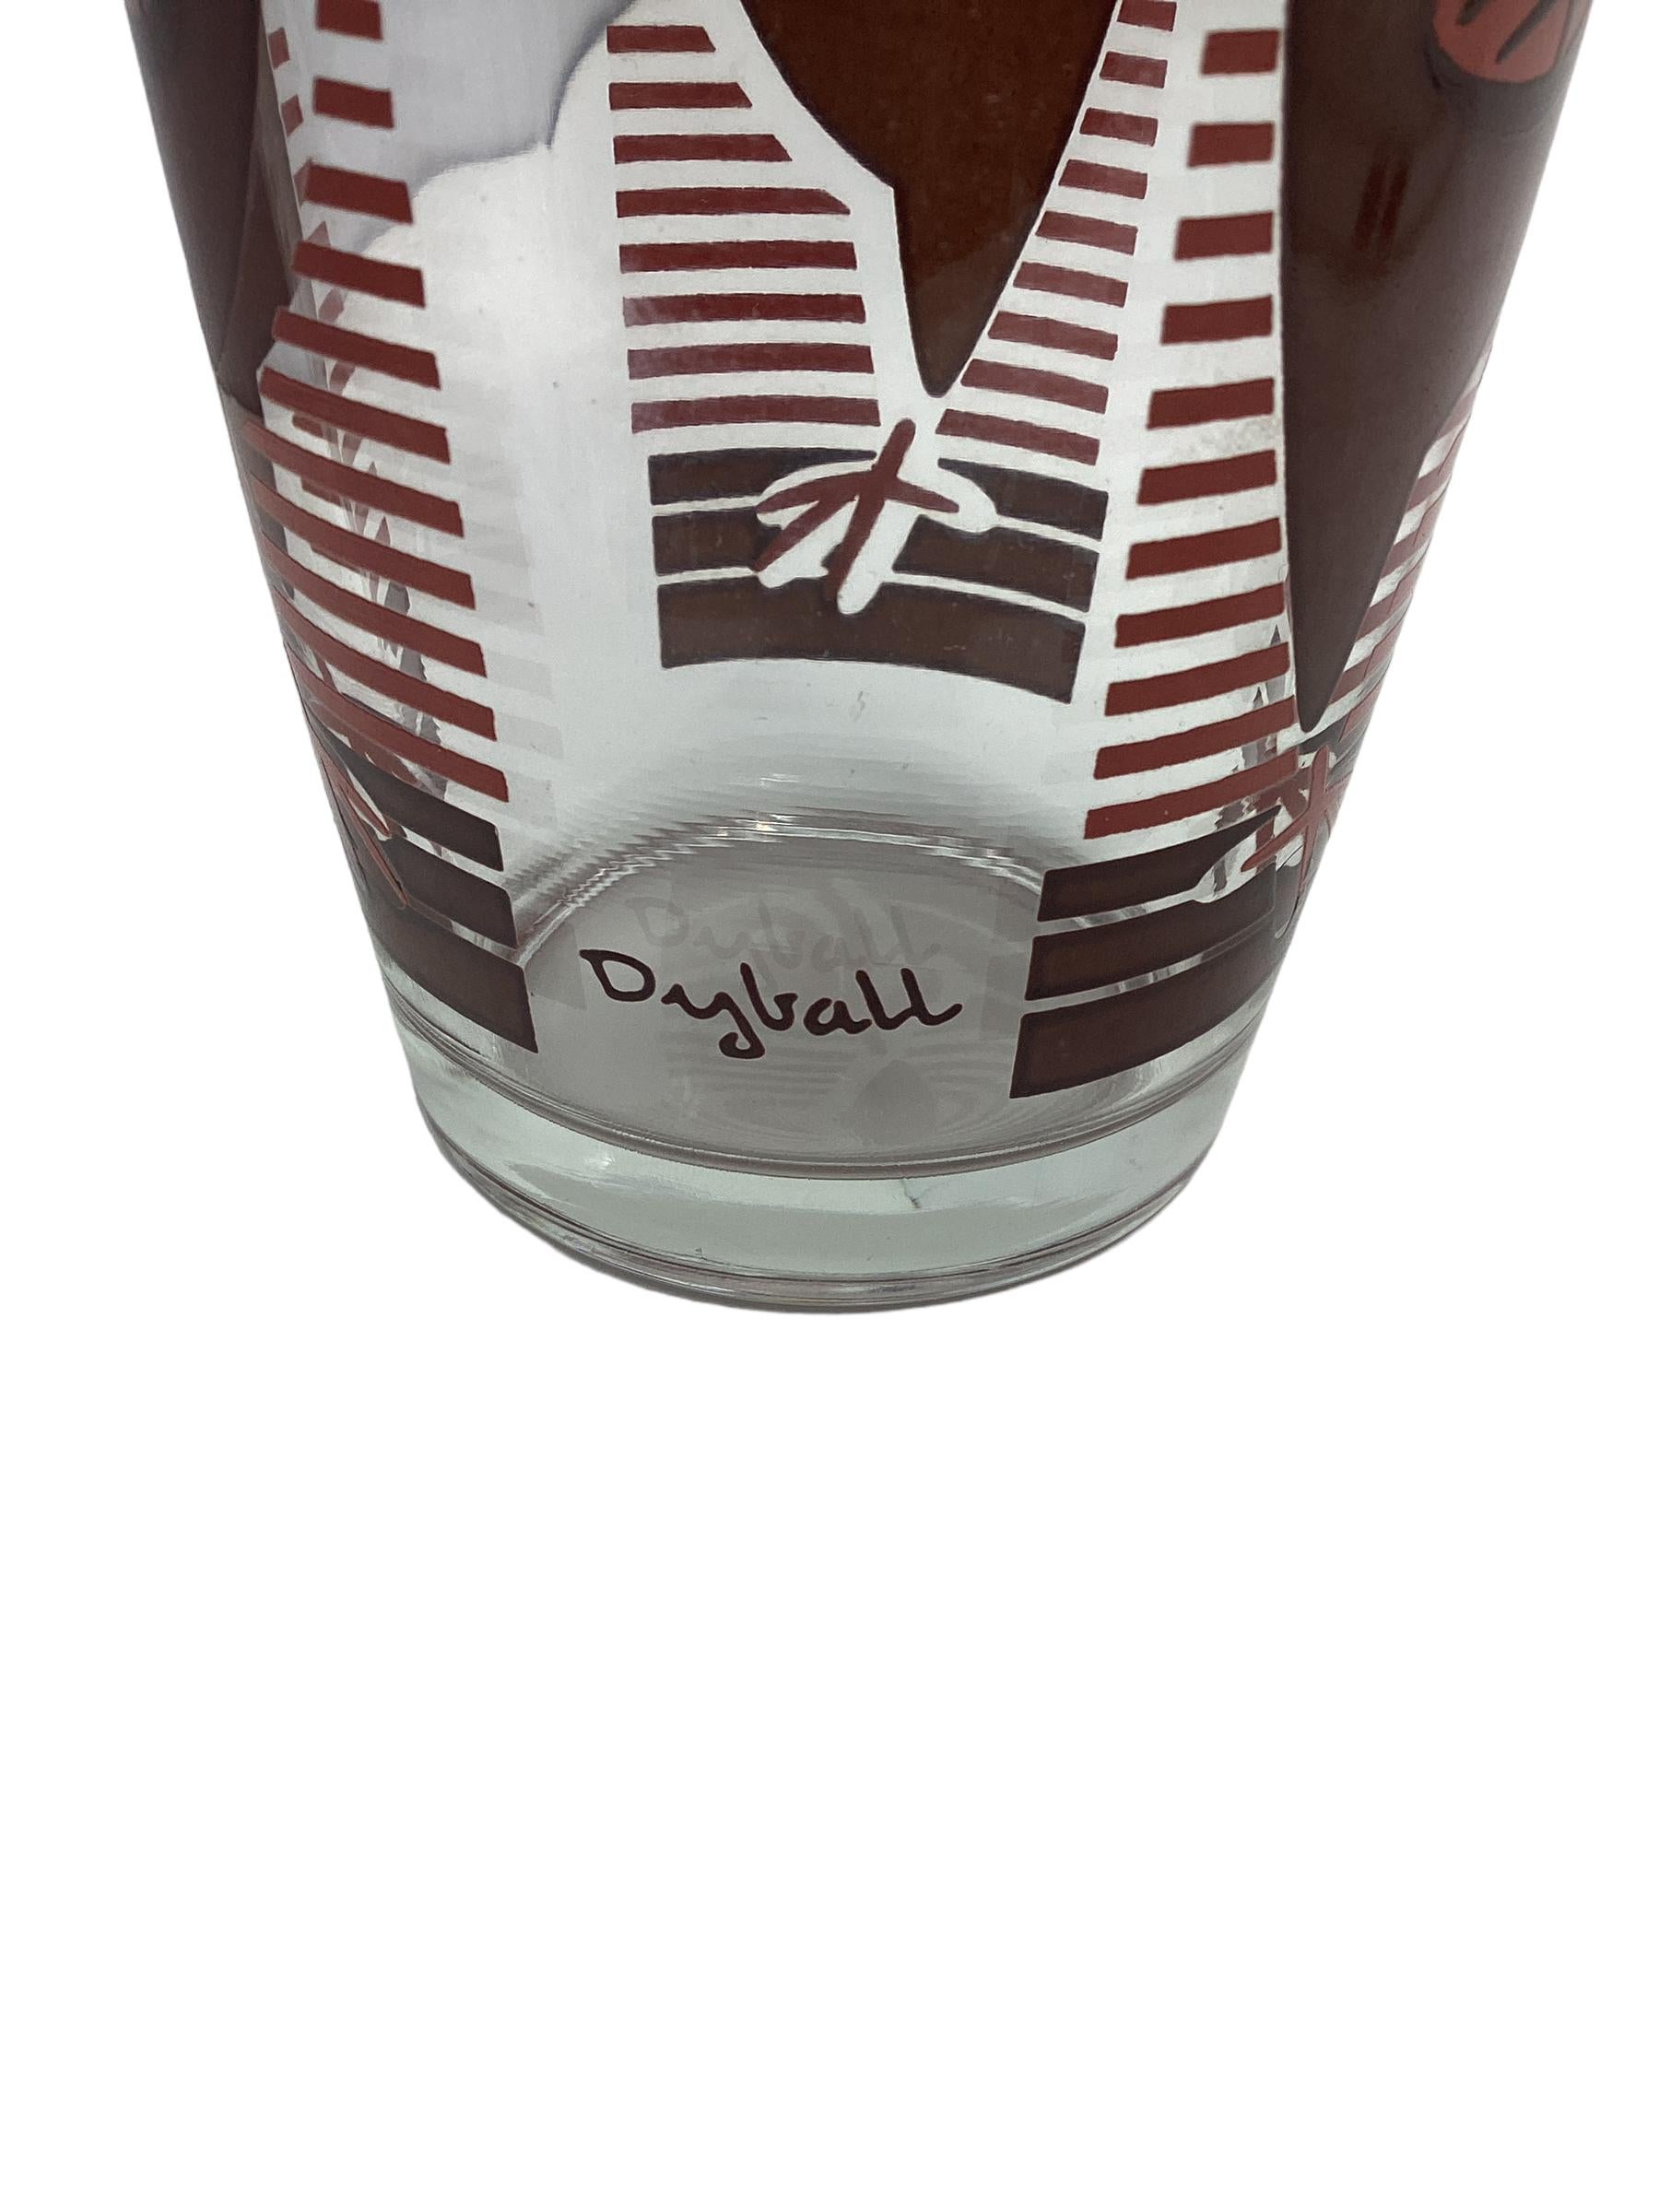 Vintage Dyball Bargeschirrset bestehend aus einem Cocktailshaker mit mattgoldenem Aluminiumdeckel und vier Cocktailgläsern, die jeweils mit stilisierten Vögeln in rostroter und brauner Emaille verziert sind. Einer der Cocktailgläser hat einen Chip